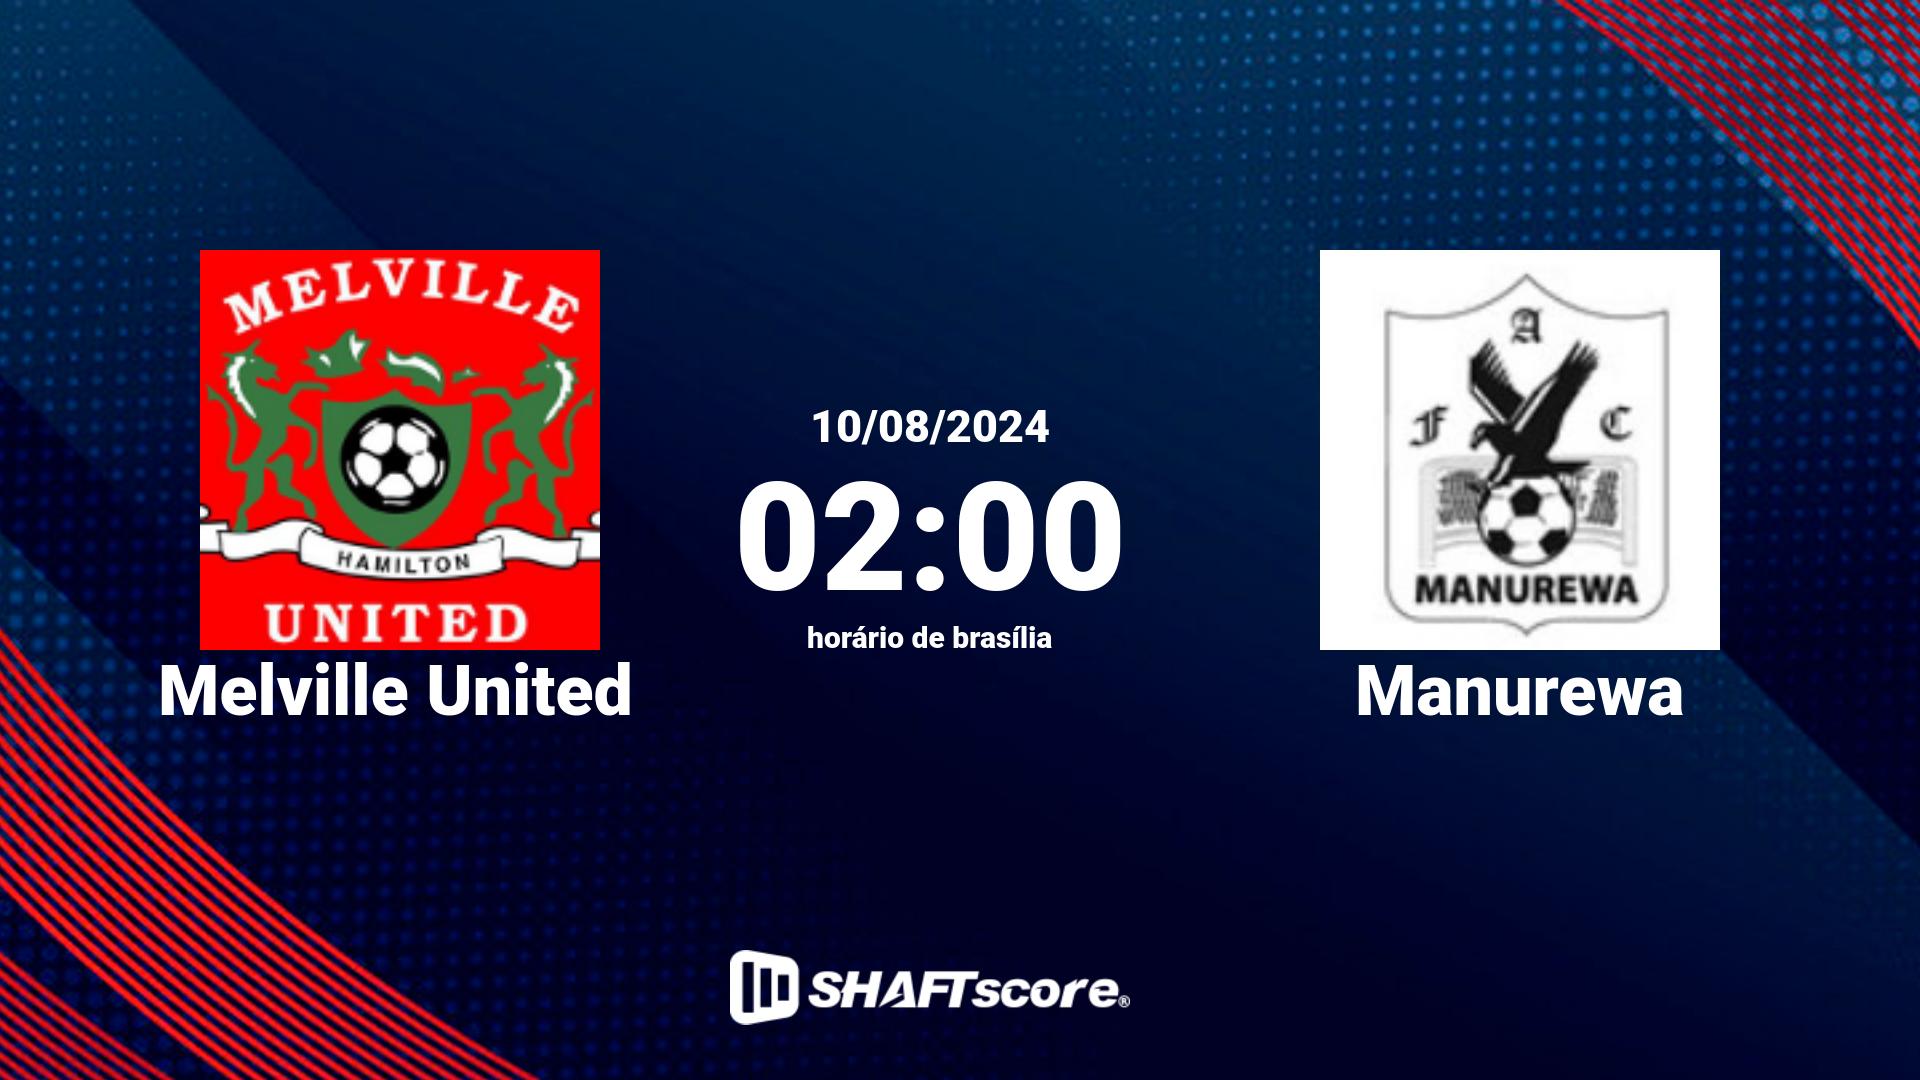 Estatísticas do jogo Melville United vs Manurewa 10.08 02:00